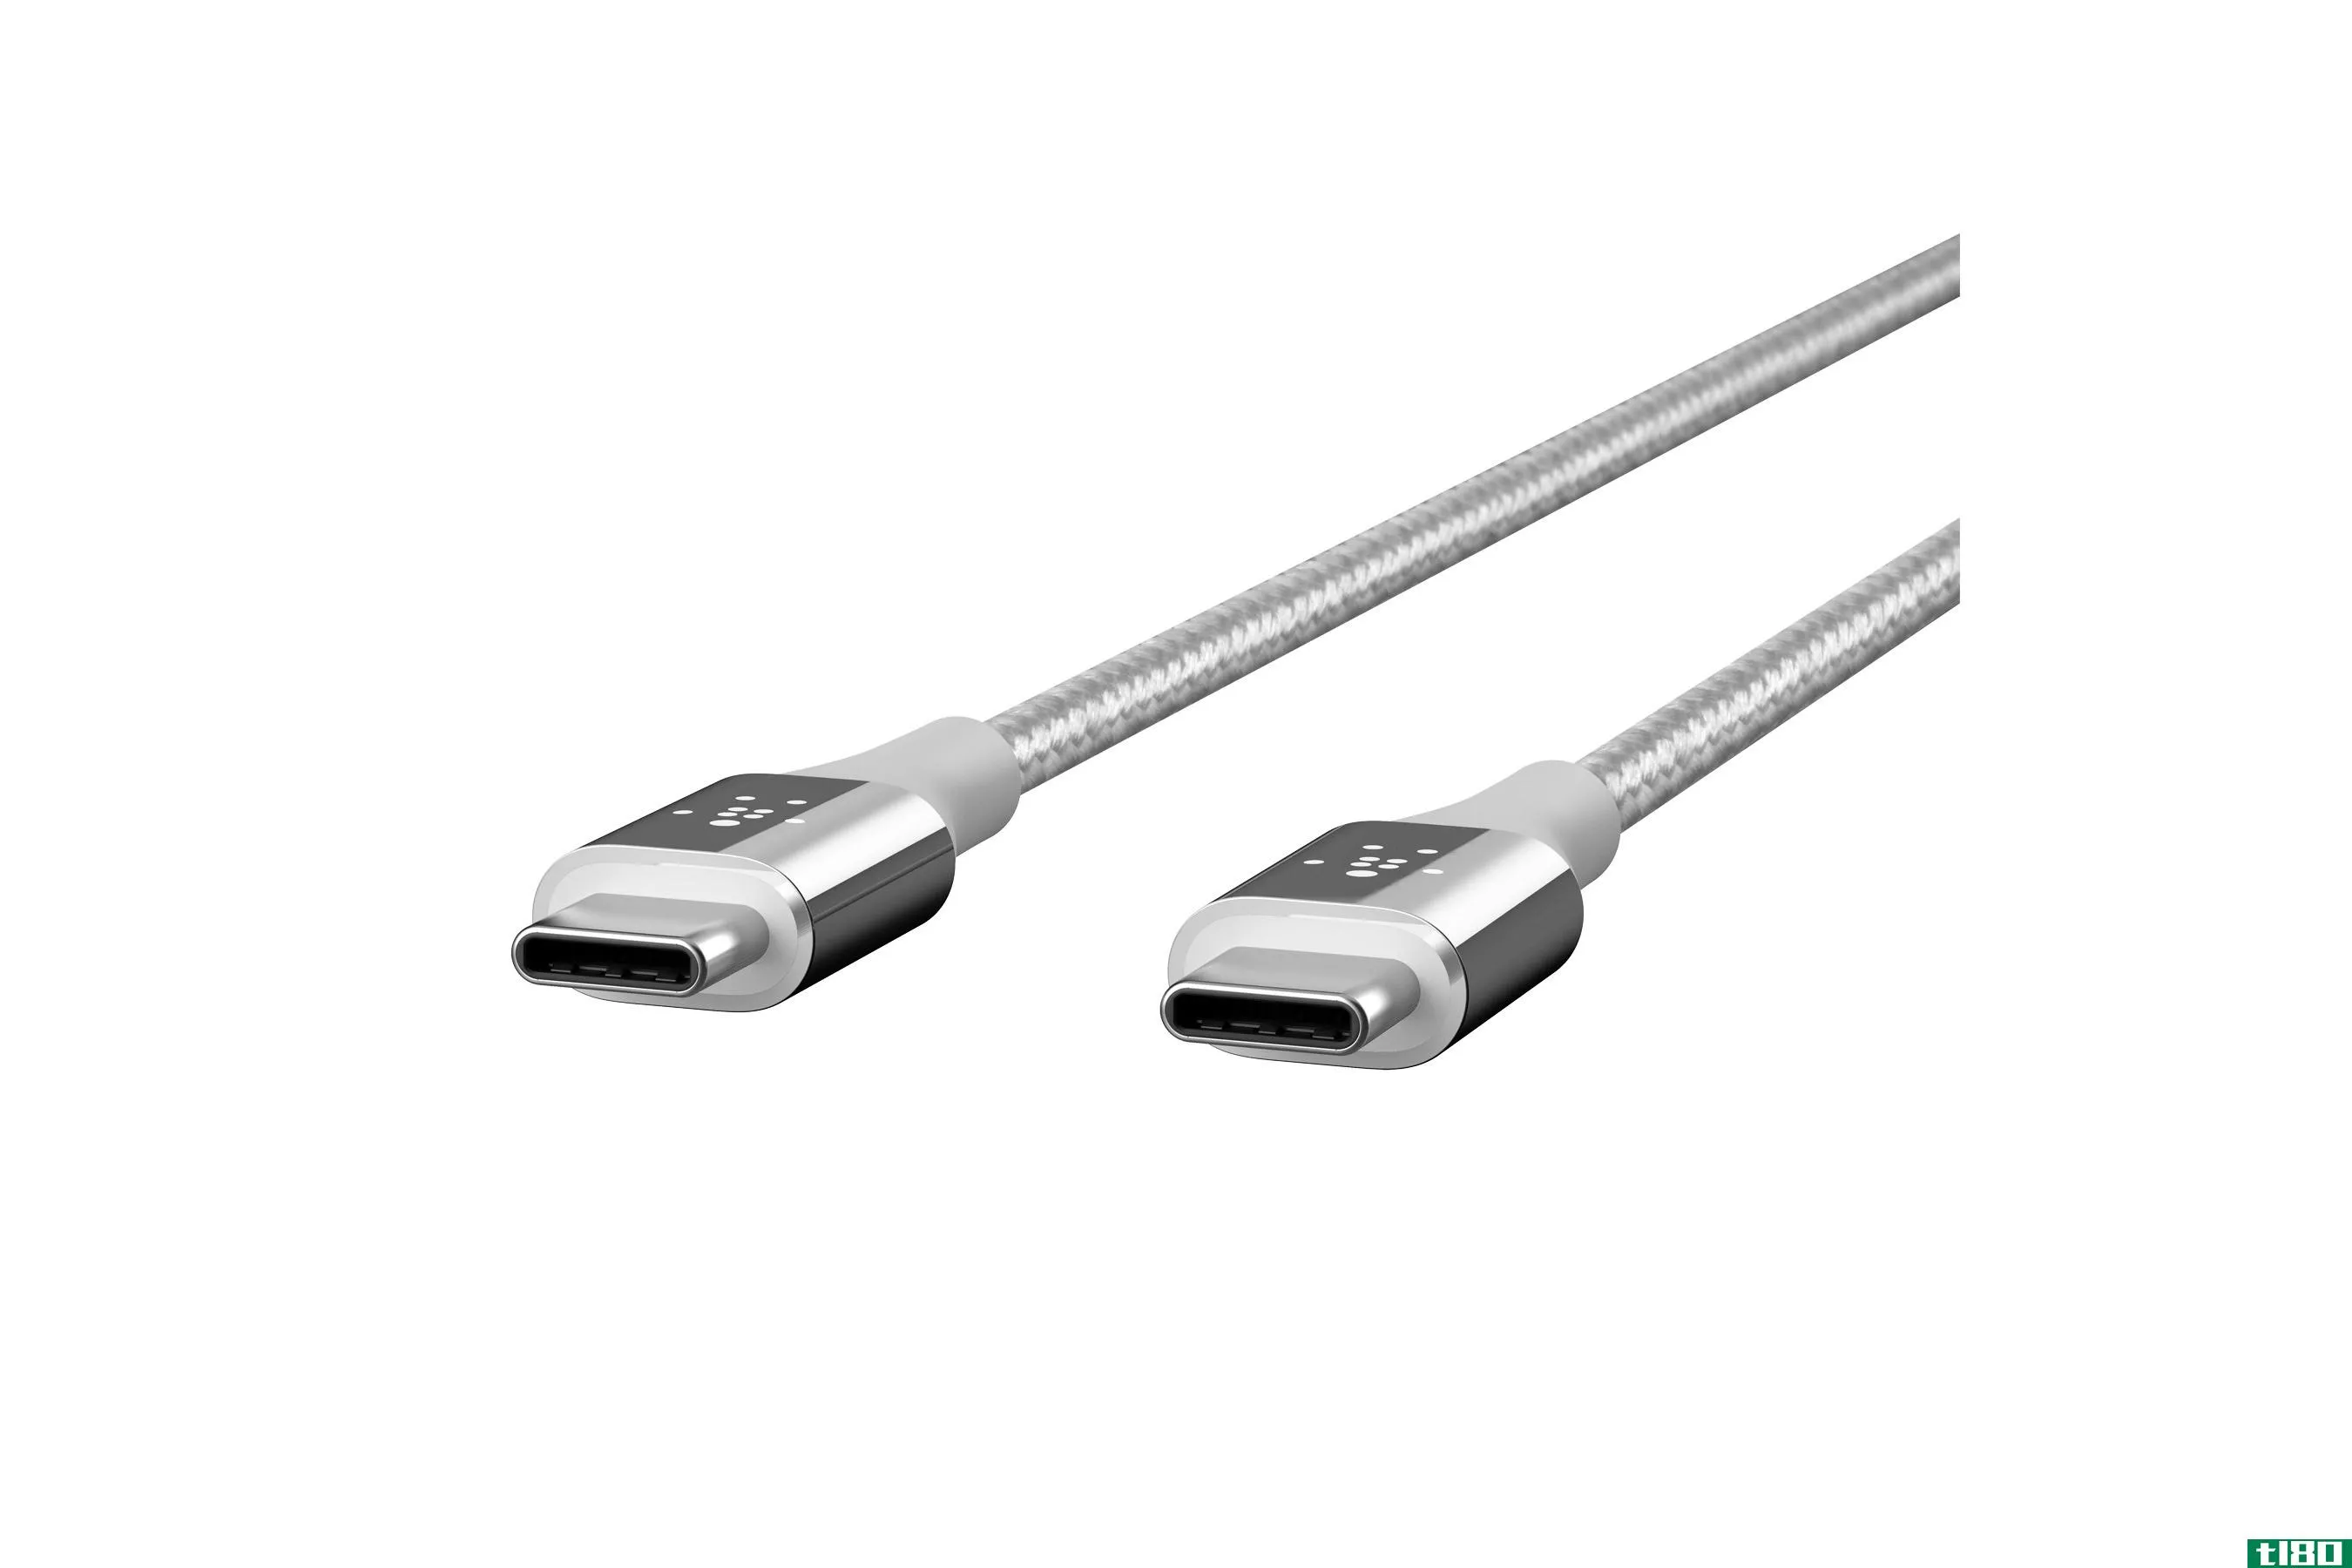 贝尔金公司推出了一种由kevlar光纤制成的耐用usb-c电缆